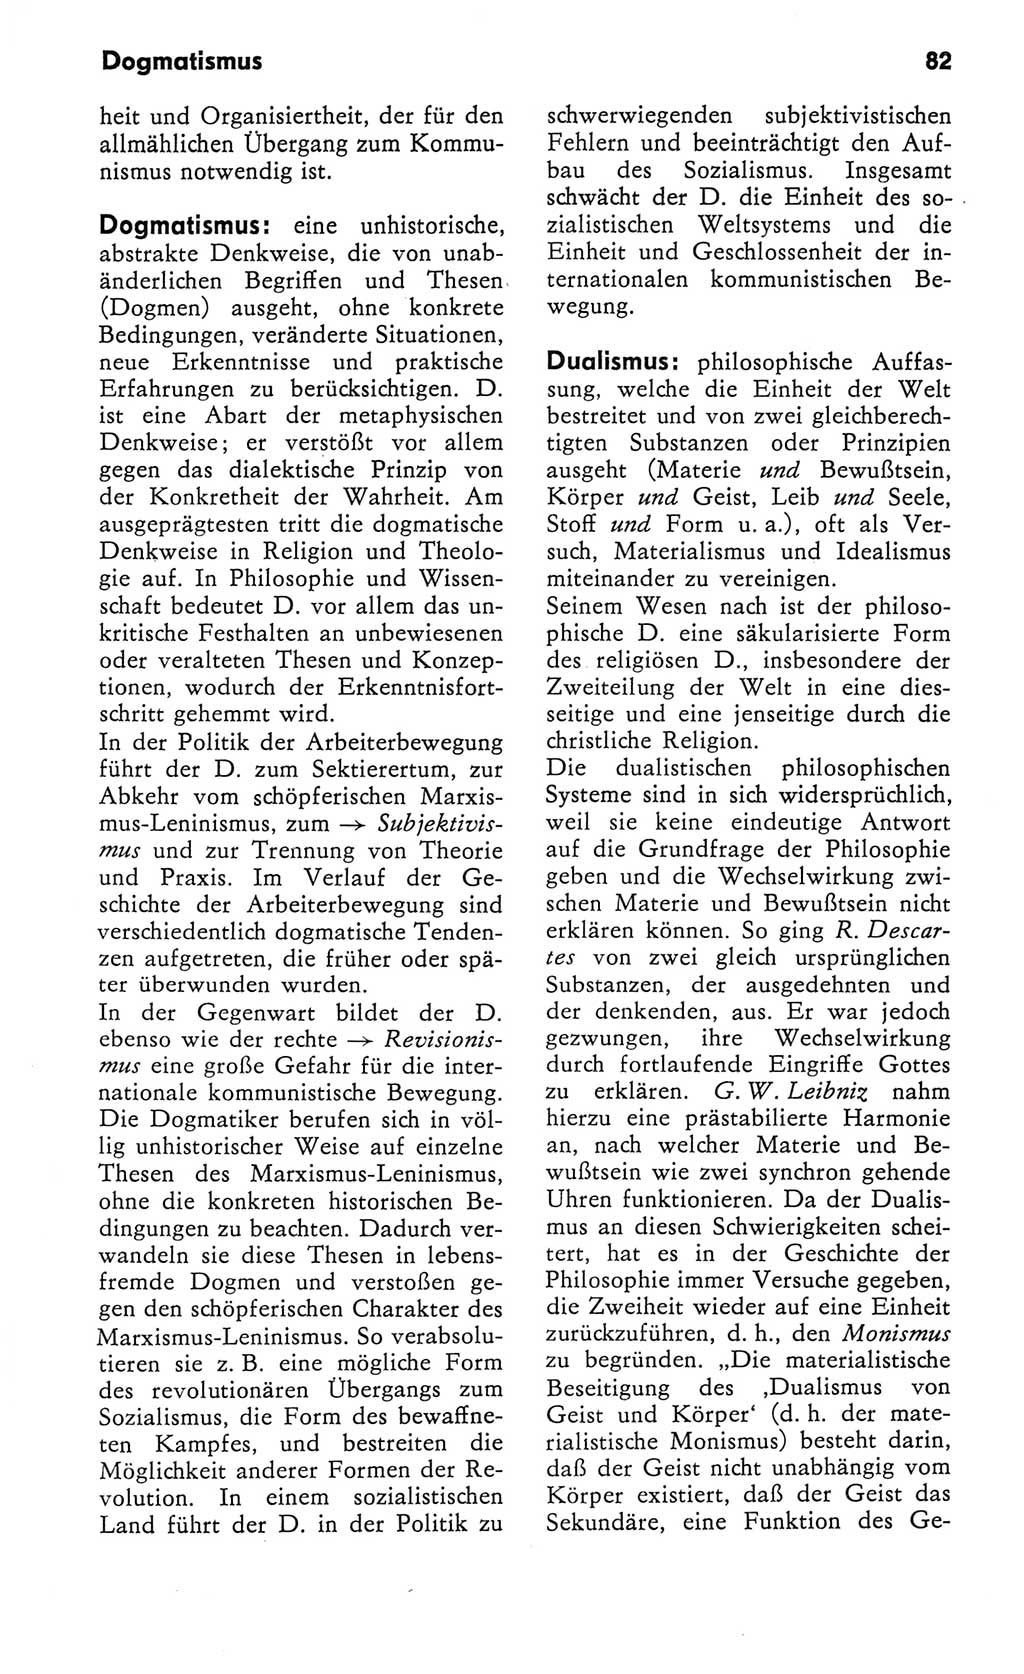 Kleines Wörterbuch der marxistisch-leninistischen Philosophie [Deutsche Demokratische Republik (DDR)] 1982, Seite 82 (Kl. Wb. ML Phil. DDR 1982, S. 82)